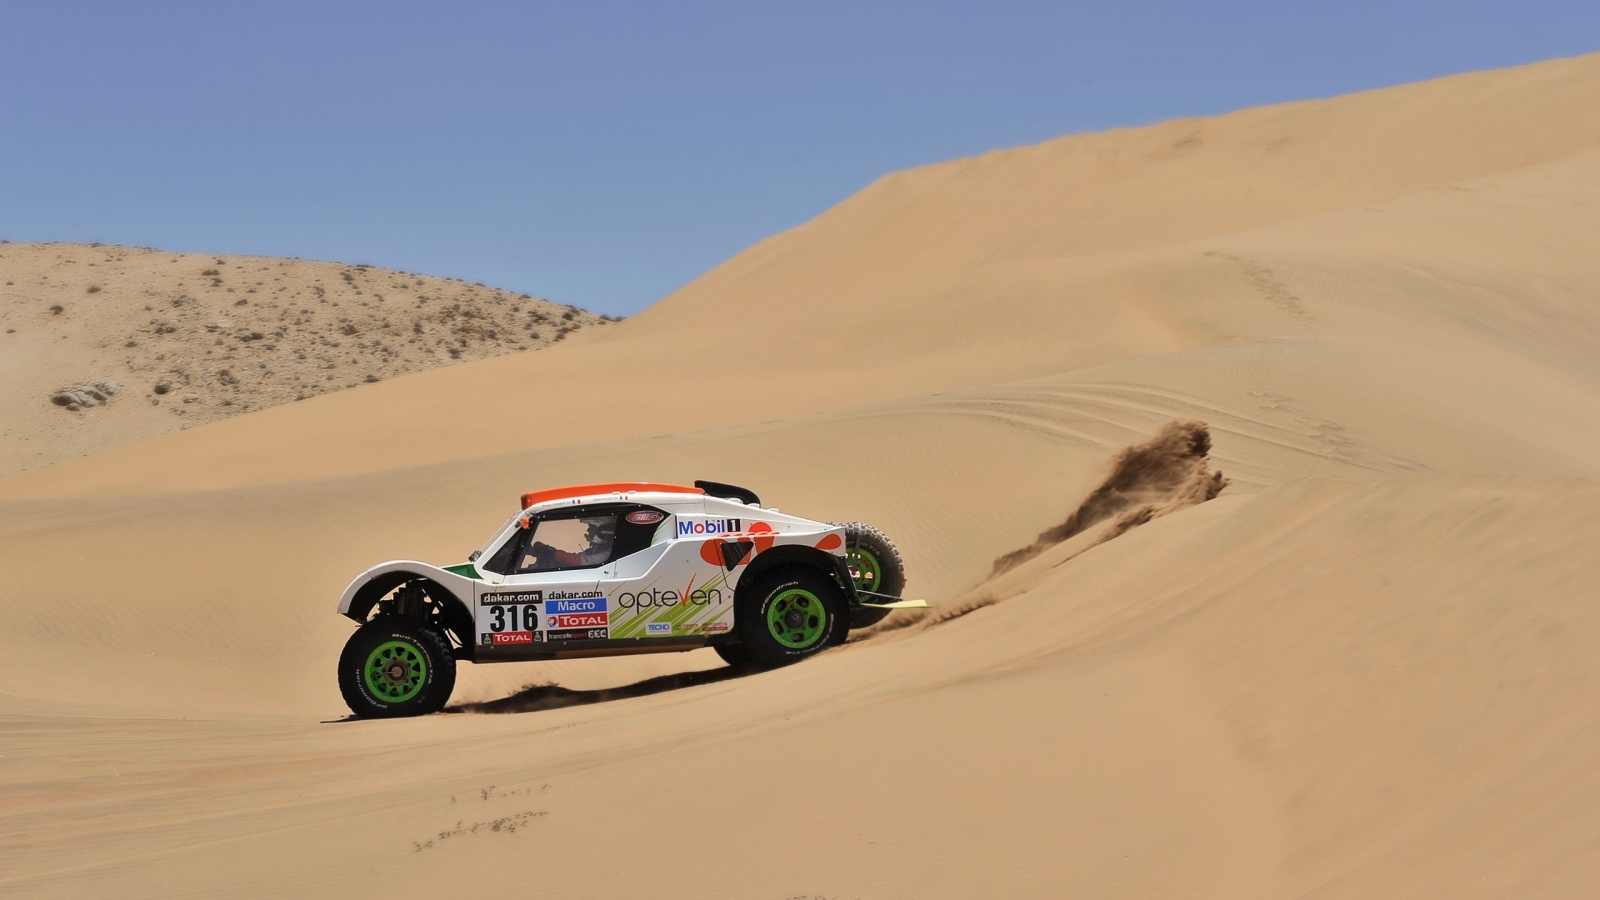 Rally Desert Race for 1600 x 900 HDTV resolution